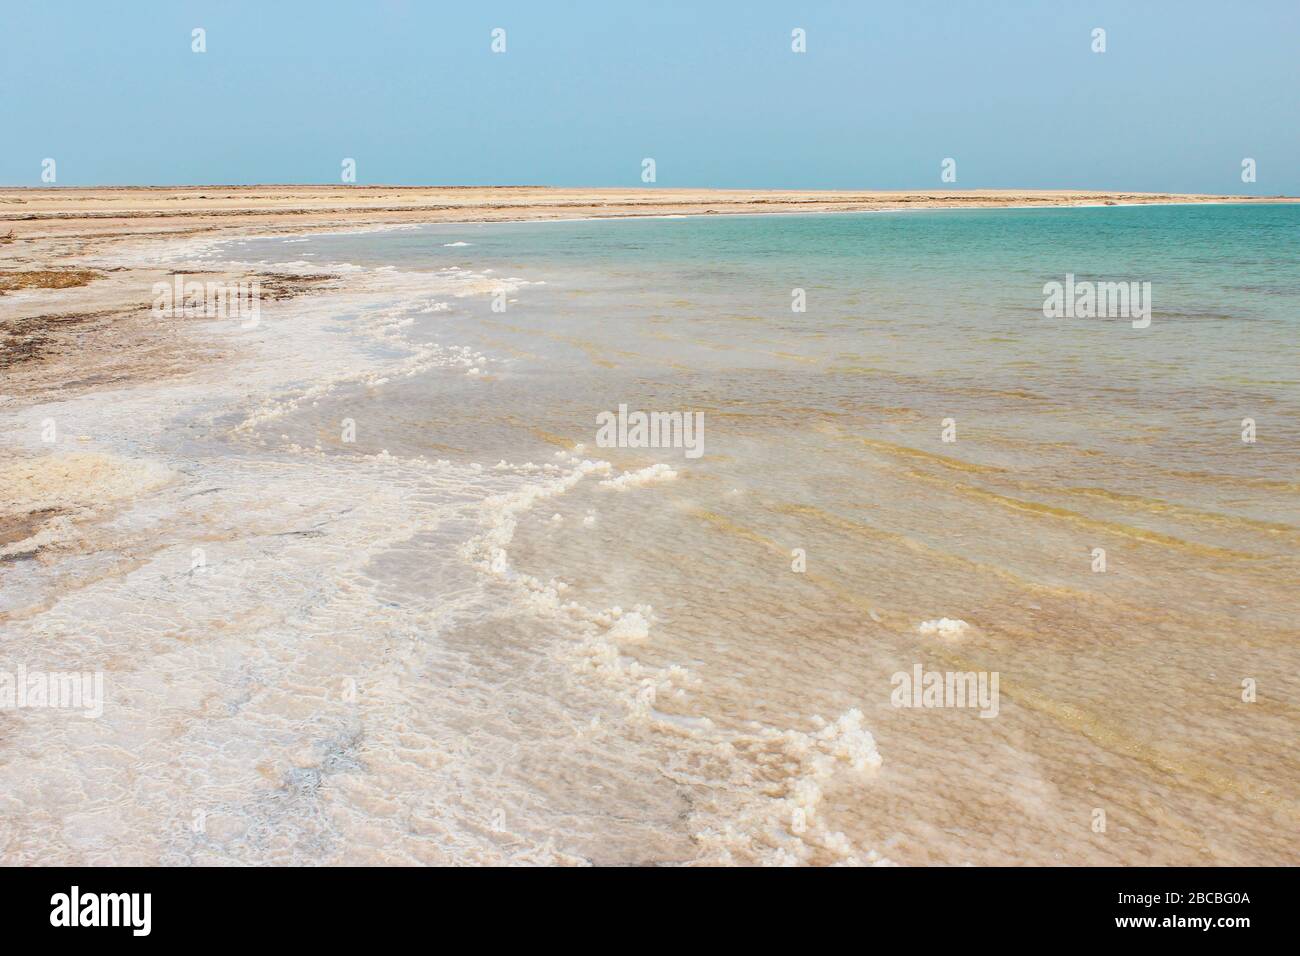 Paysage surplombant la rive de la mer Morte Banque D'Images